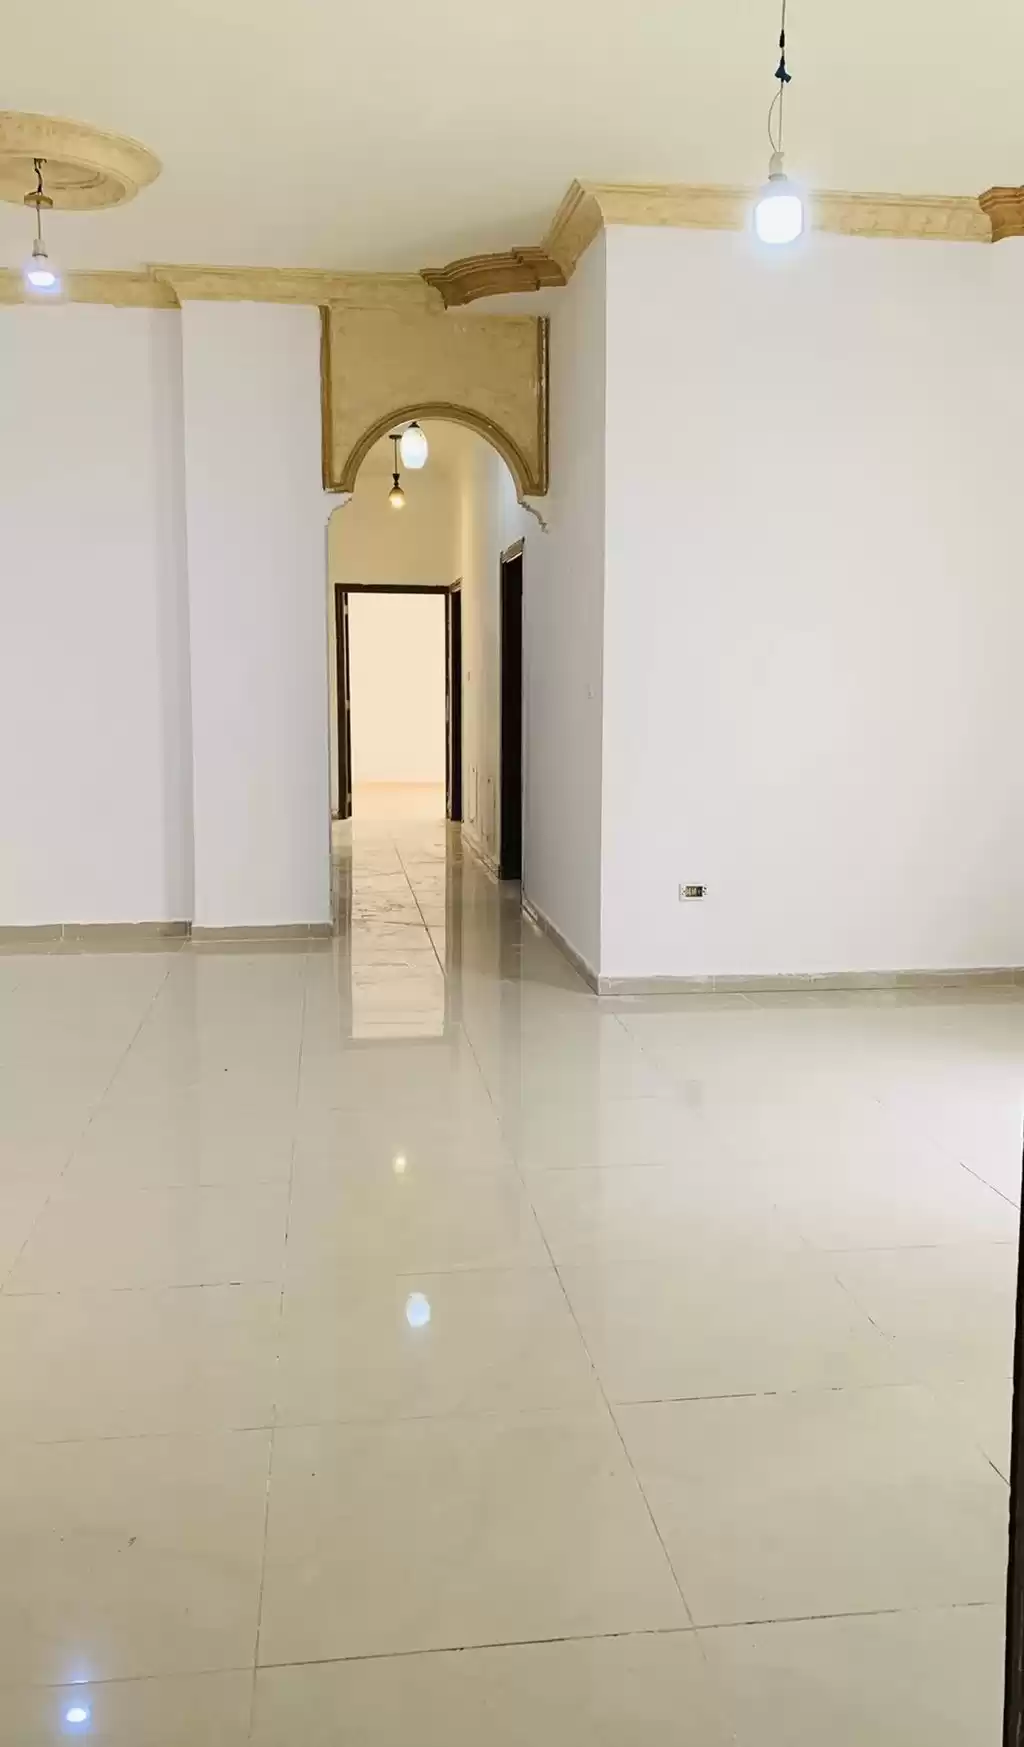 سكني عقار جاهز 3 غرف  غير مفروش شقة  للإيجار في عمان #26230 - 1  صورة 